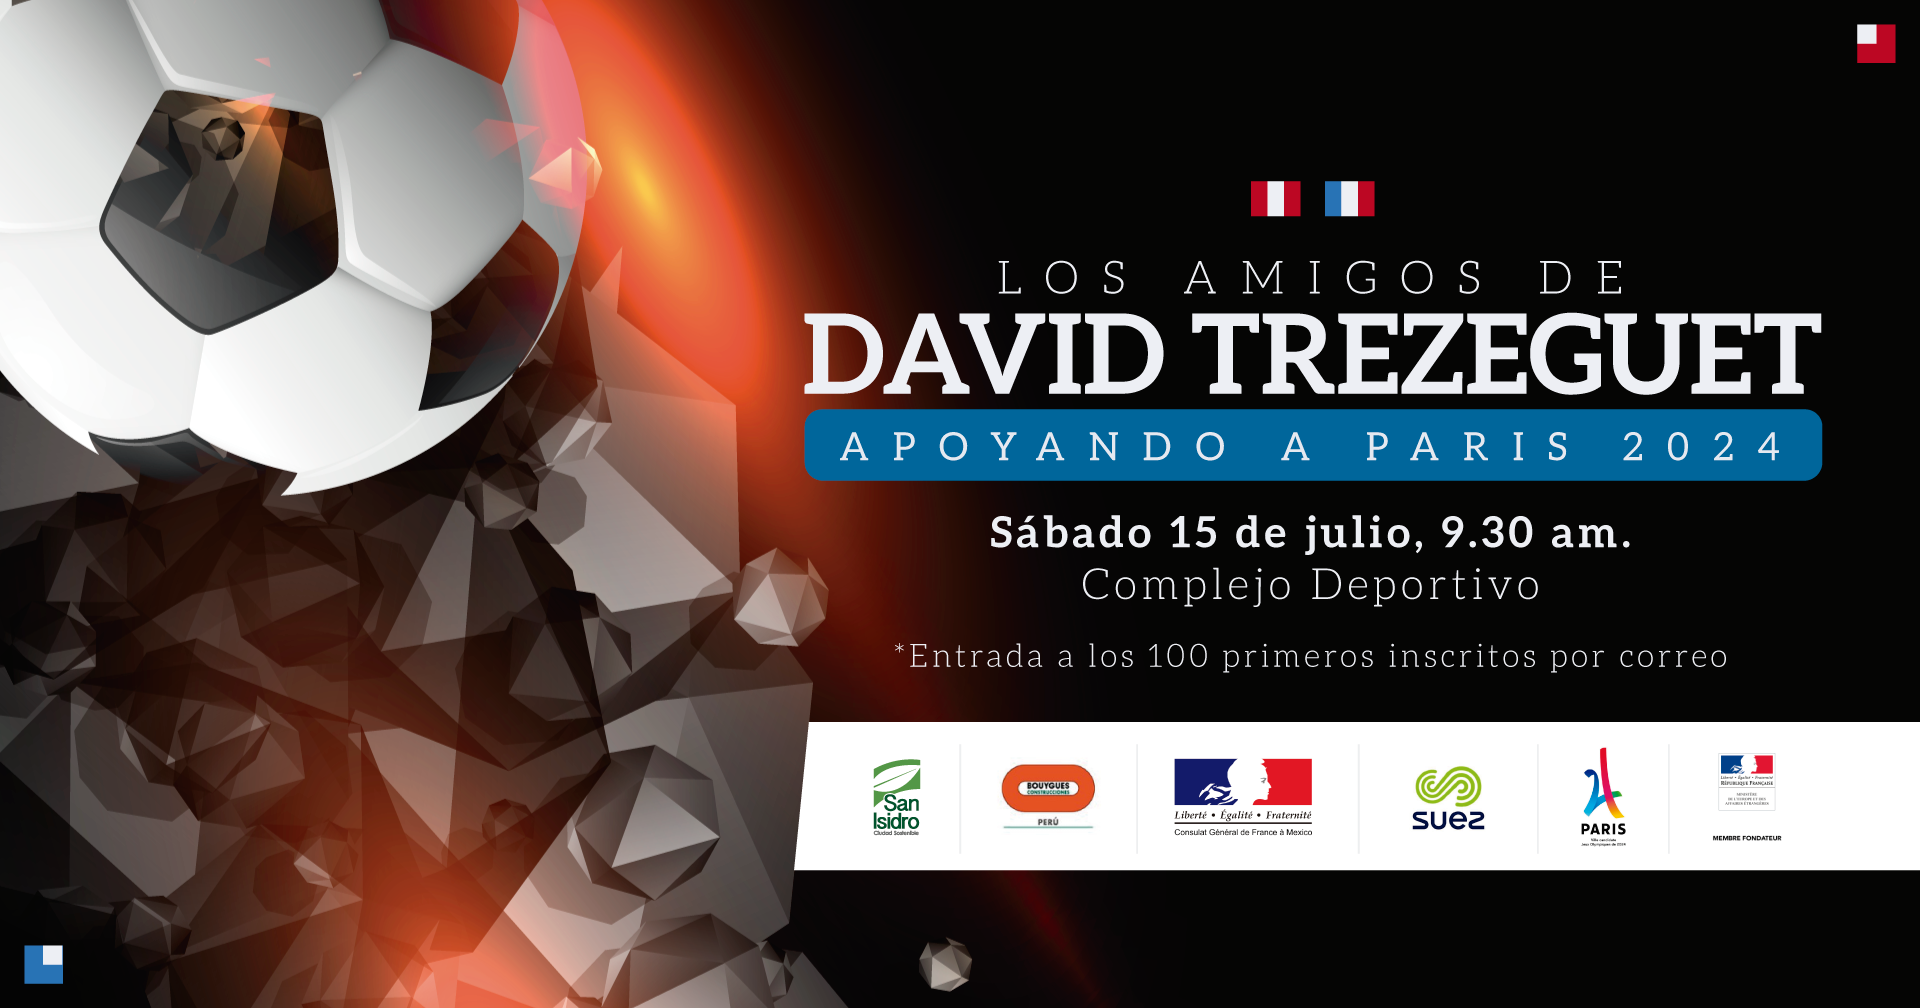 David Trezeguet apoyando París 2024